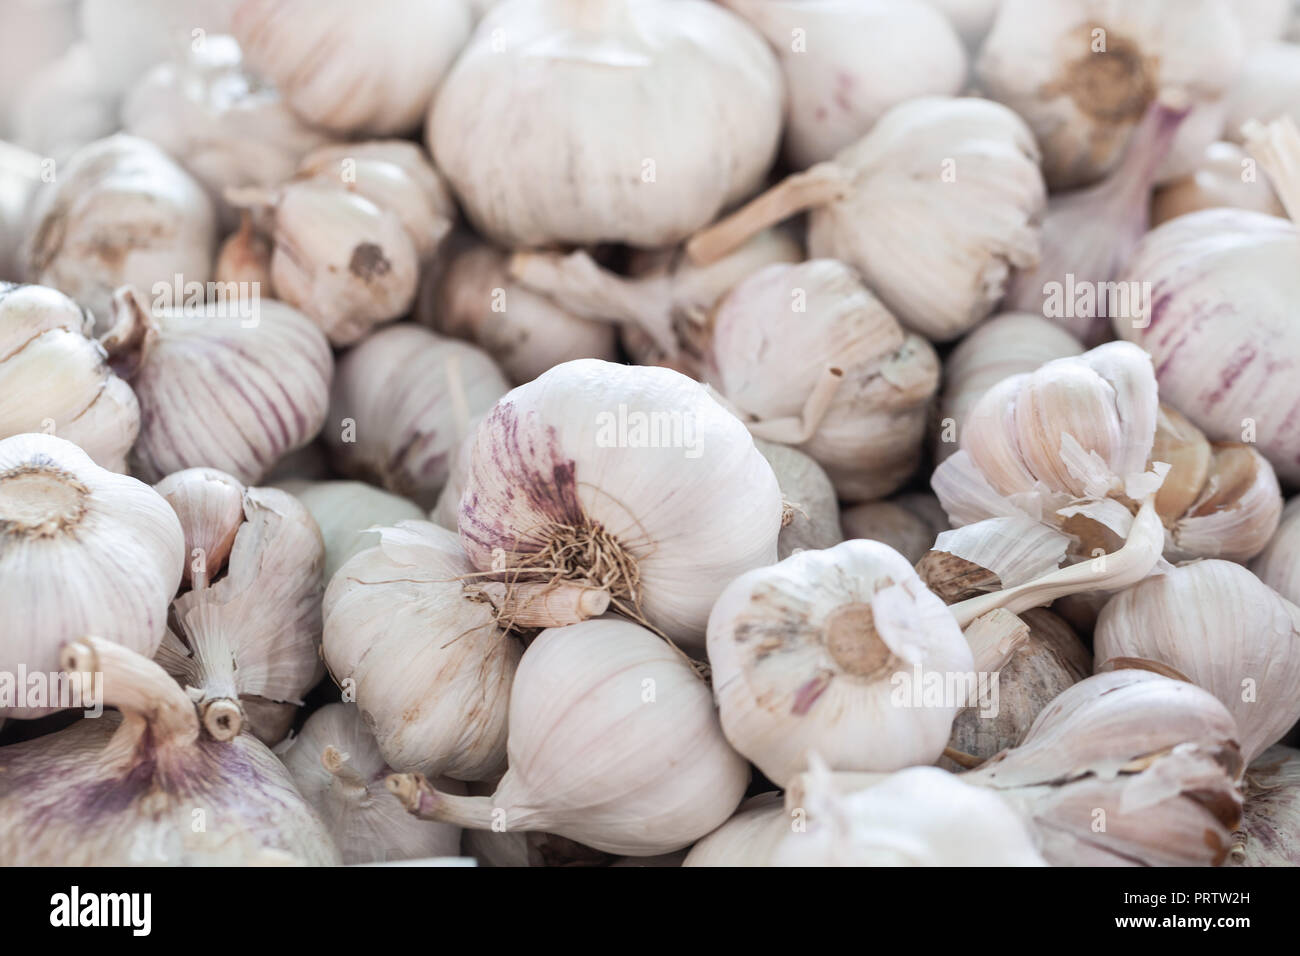 Weißer Knoblauch Zwiebeln lag auf einem Zähler in einem Markt, Nahaufnahme Stockfoto